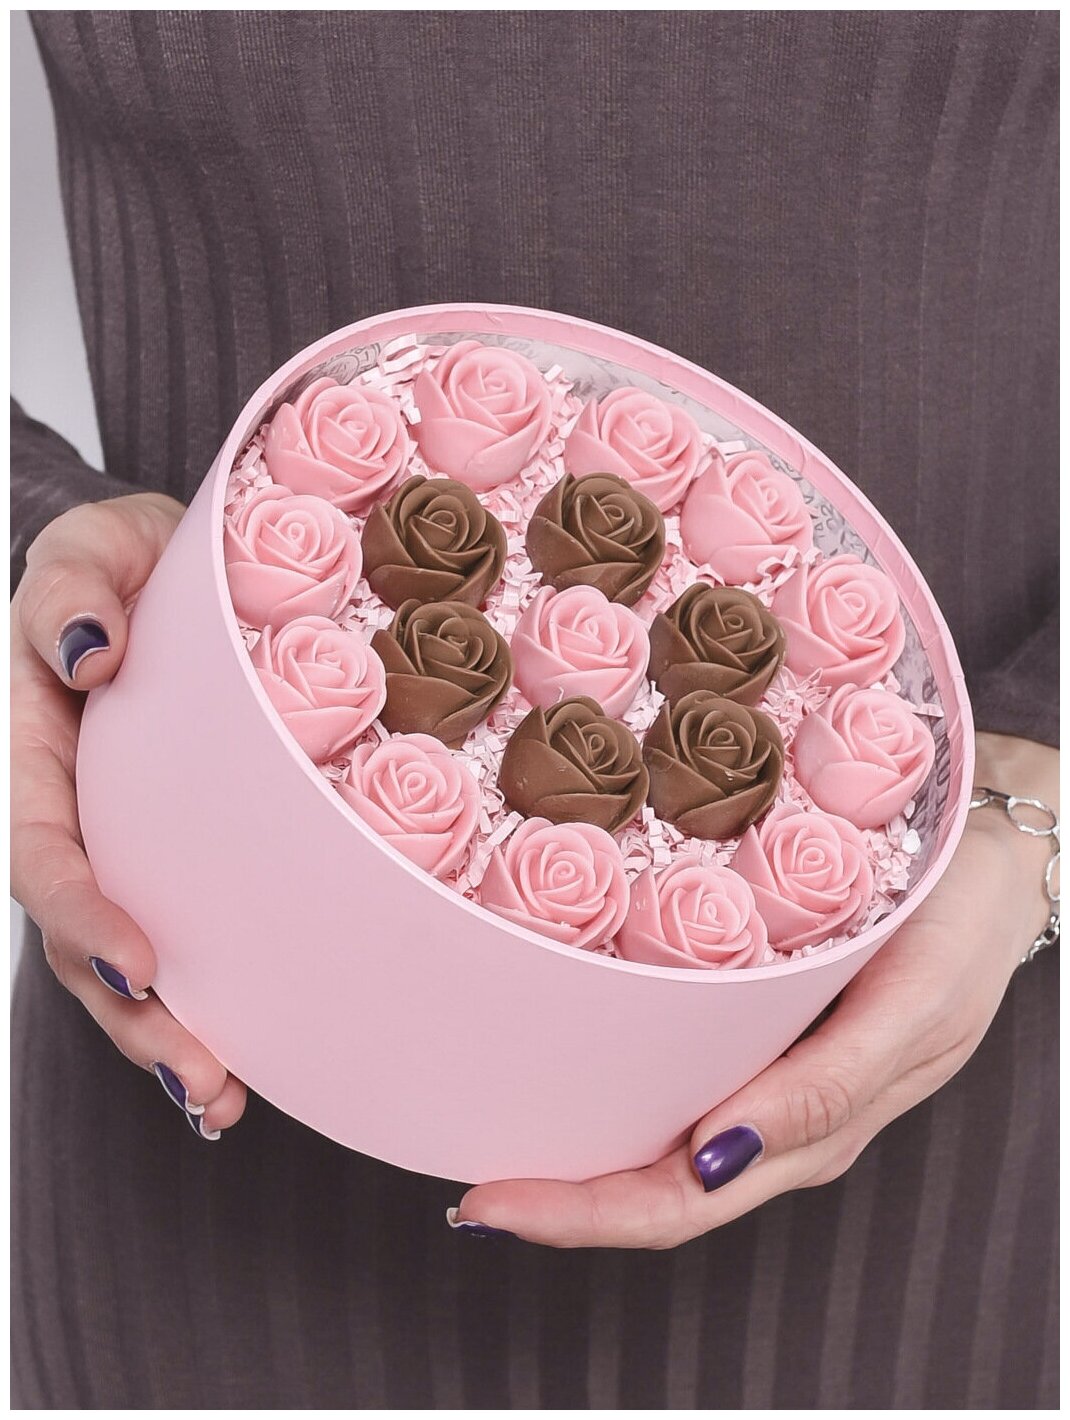 Шоколадные розы CHOCO STORY - 19 шт. в Розовой шляпной коробке, Розовый и Молочный Бельгийский шоколад с узором "Круг", 228 гр. Z19-R-RSH-O - фотография № 1